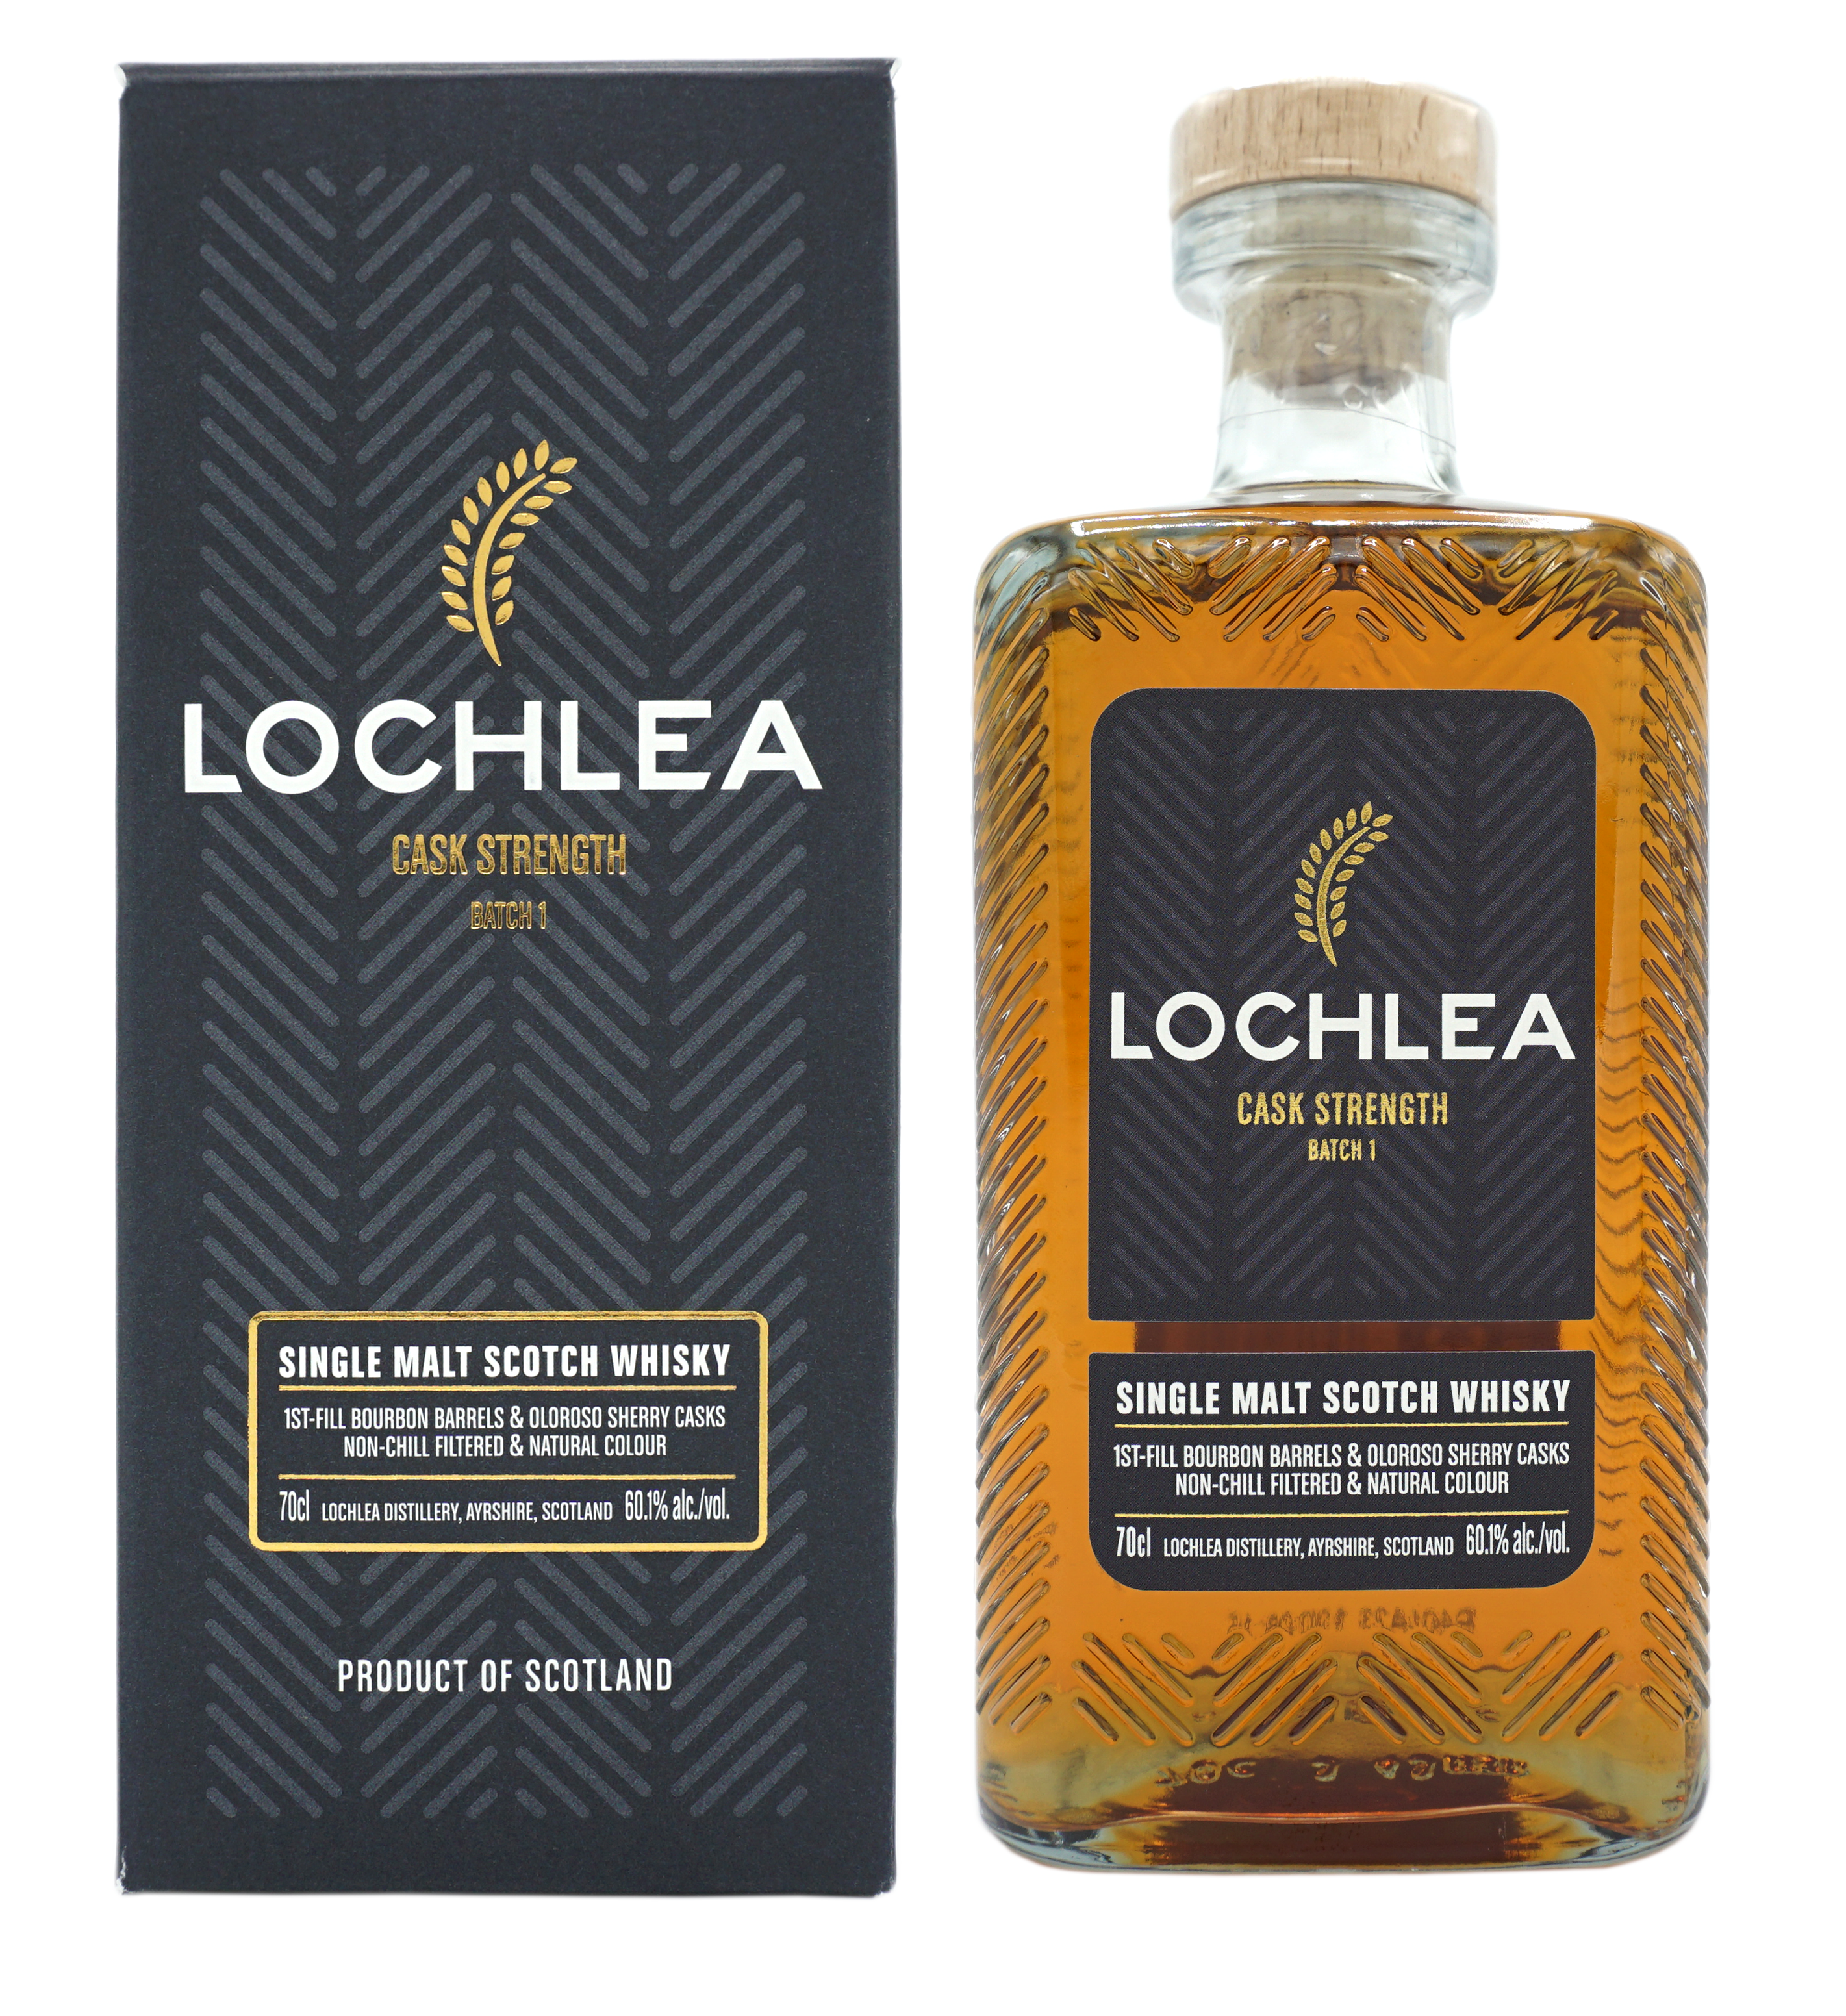 Lochlea Cask Strengt Compleet